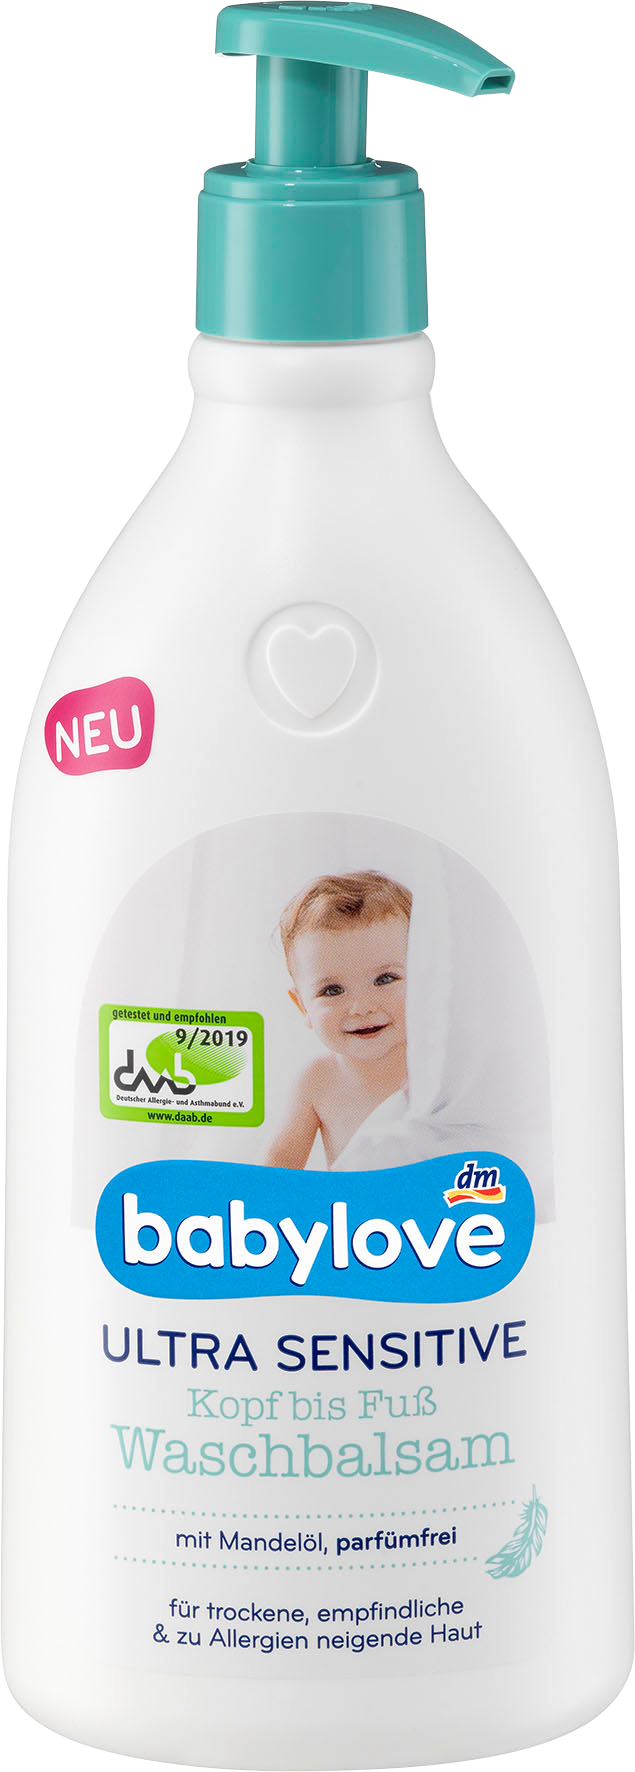 Sữa tắm Babylove siêu nhạy cảm dành cho bé, 500 ml